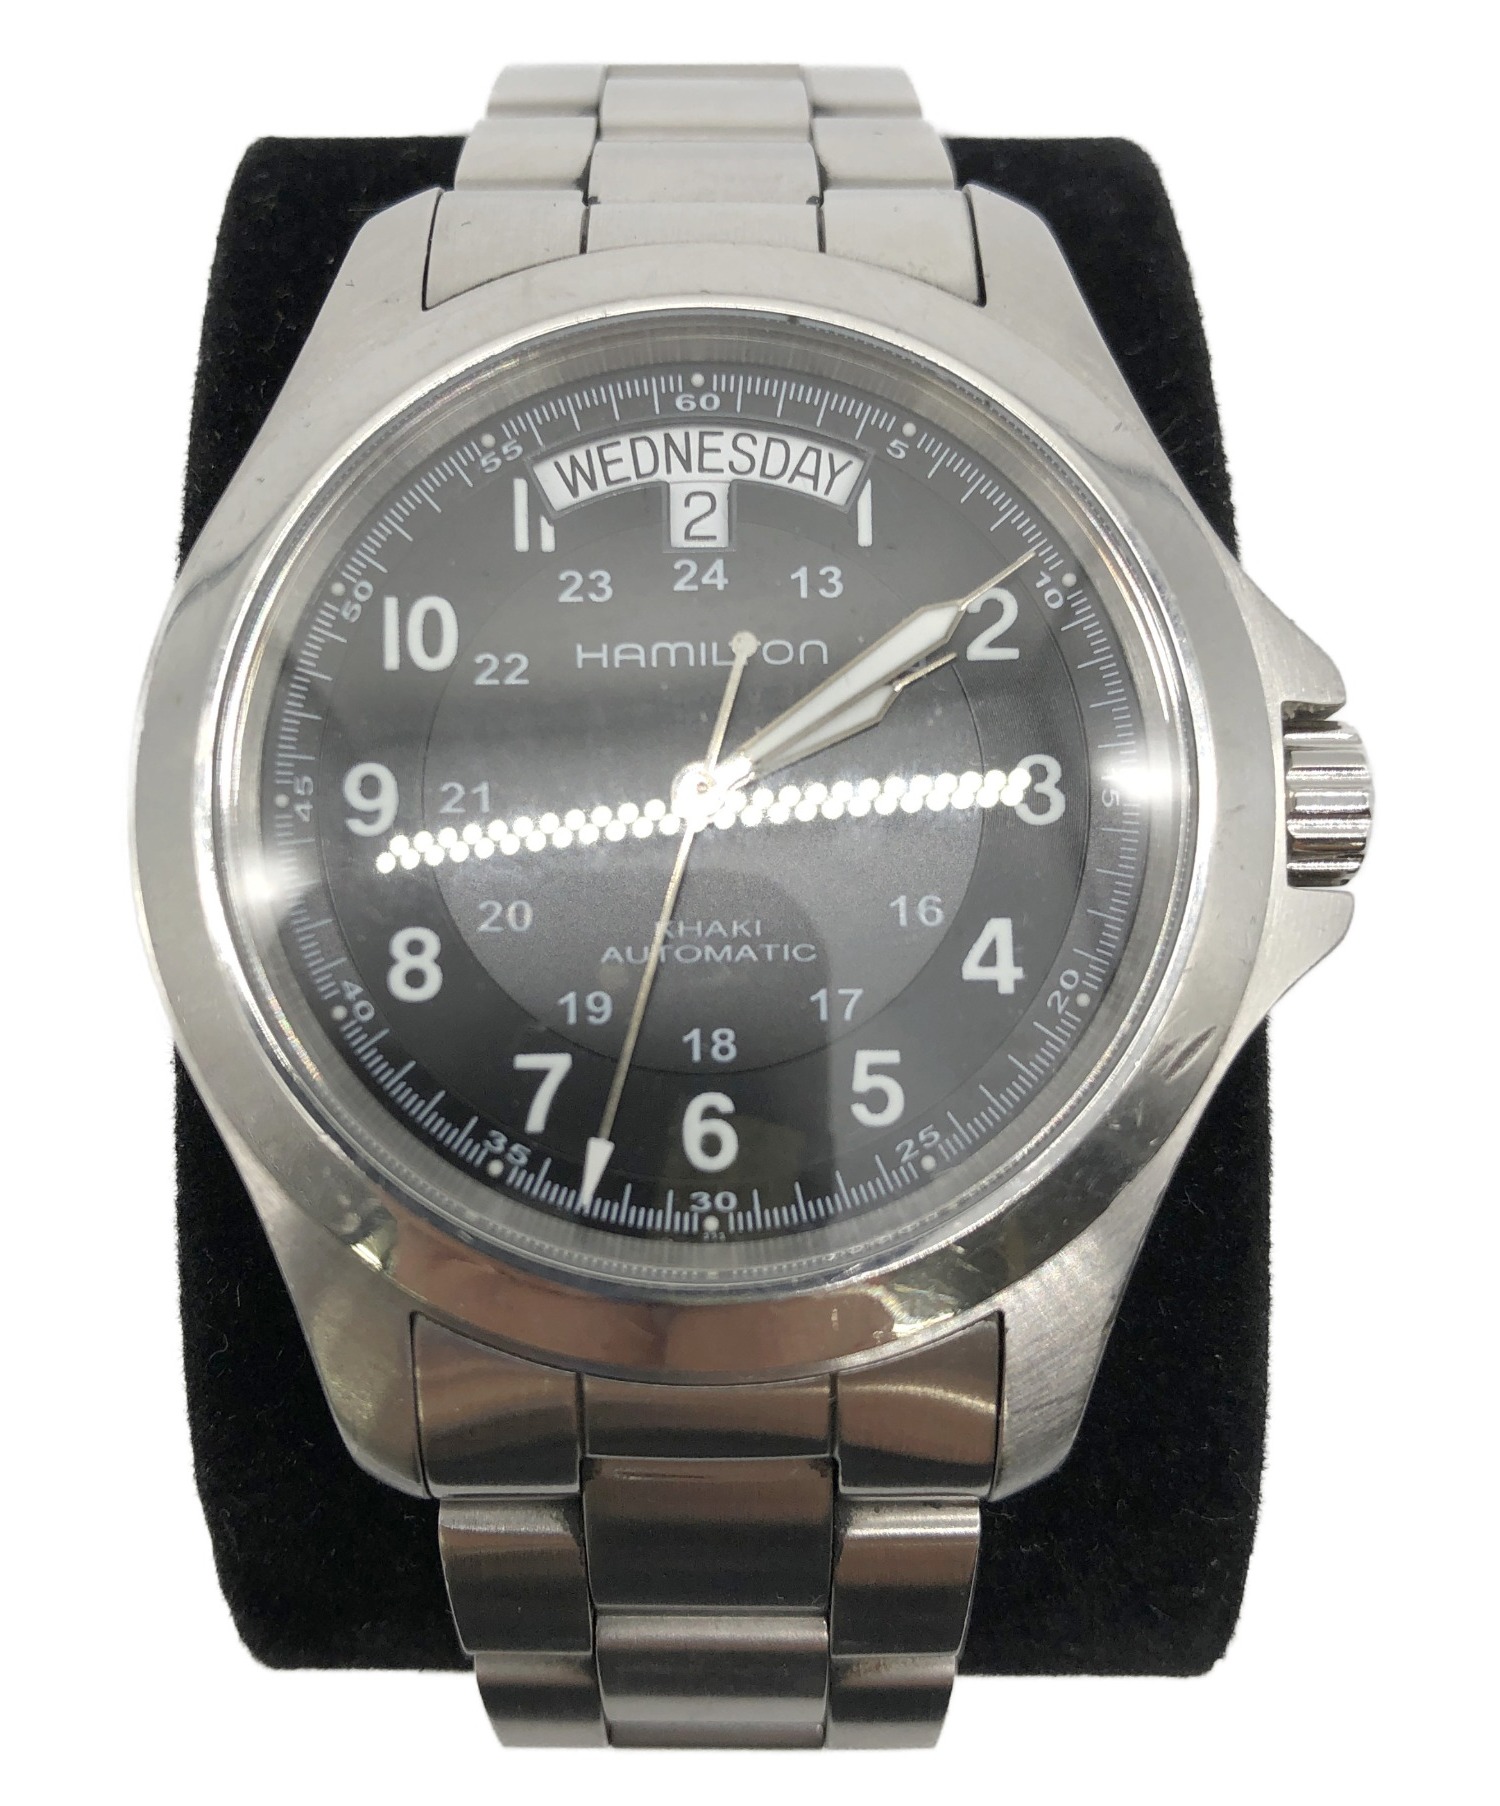 ハミルトン カーキキング H644550 - 腕時計(アナログ)